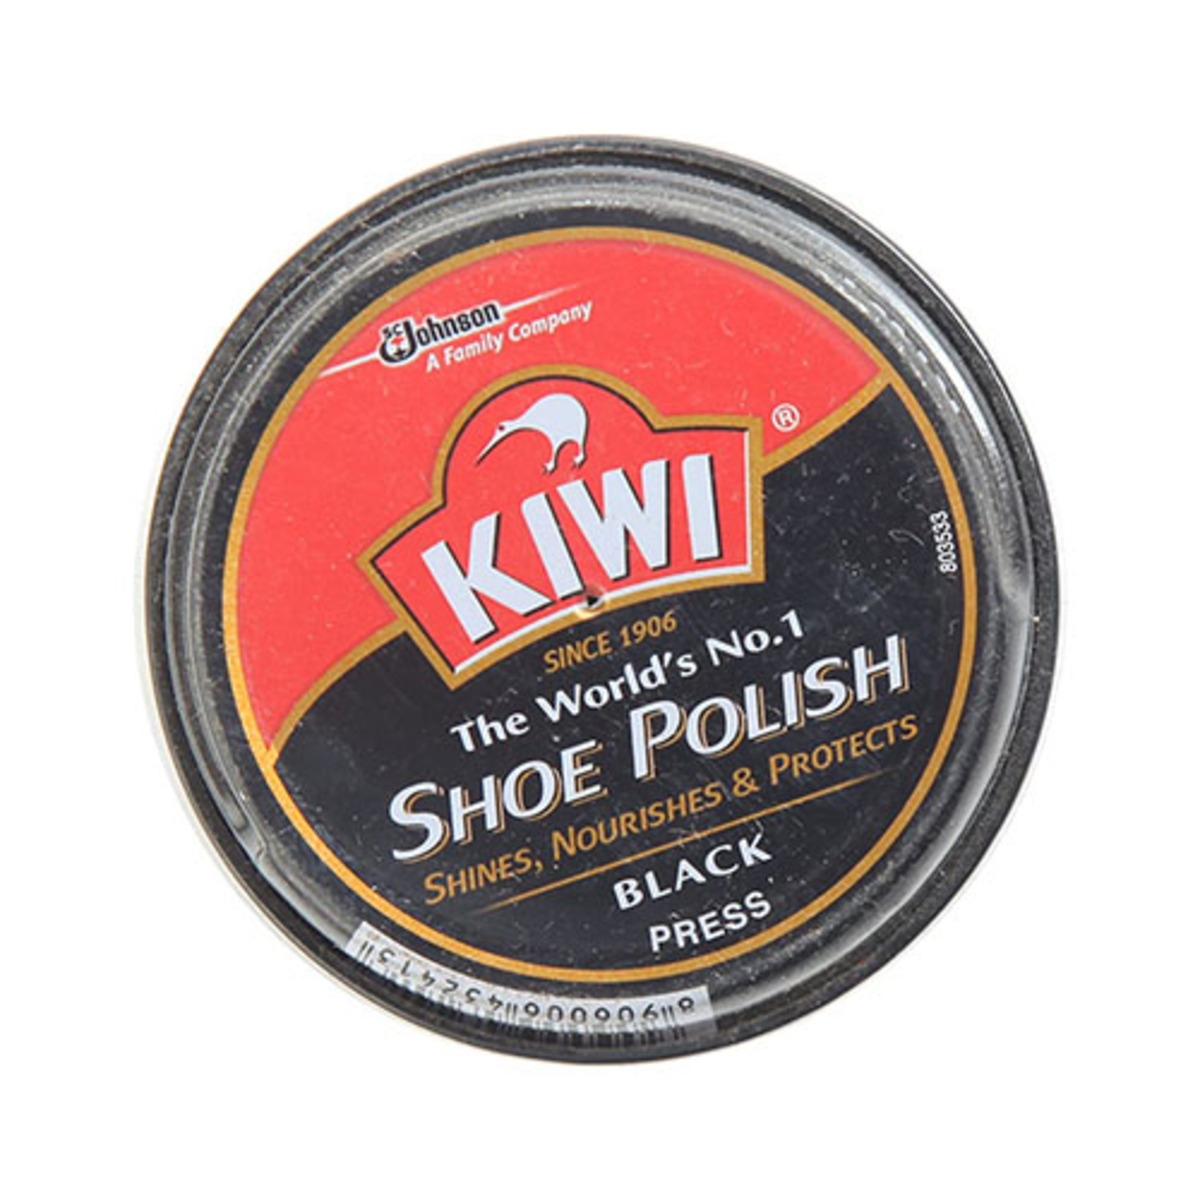 Kiwi Shoe Polish Black 15g